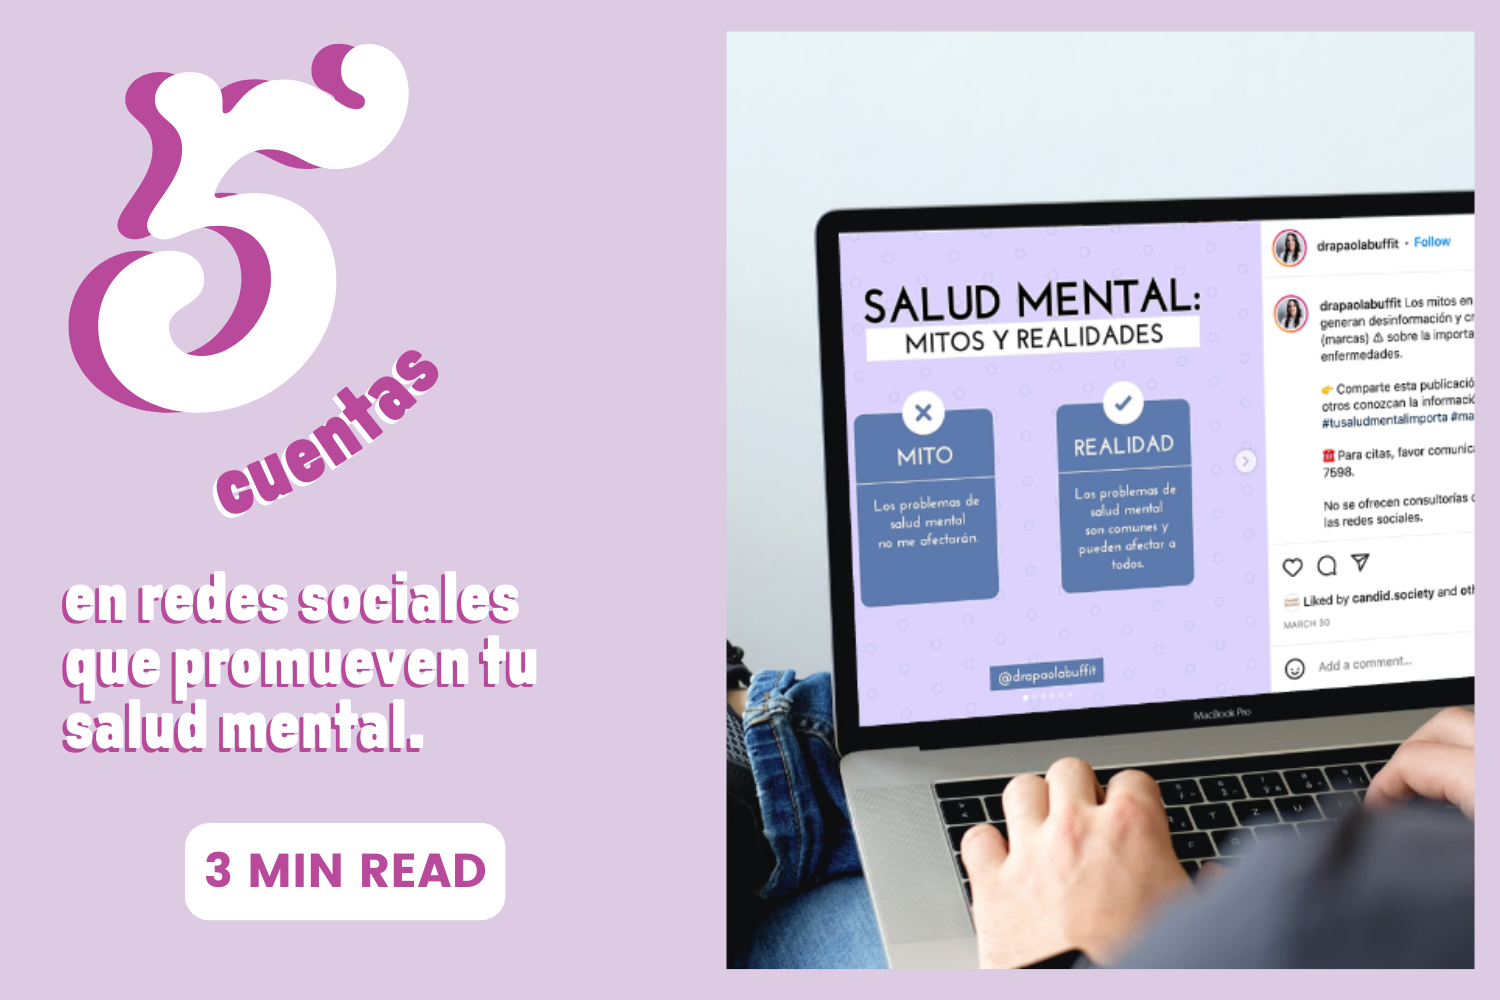 5 cuentas que promueven tu salud mental 🧠  ¡Síguelas!